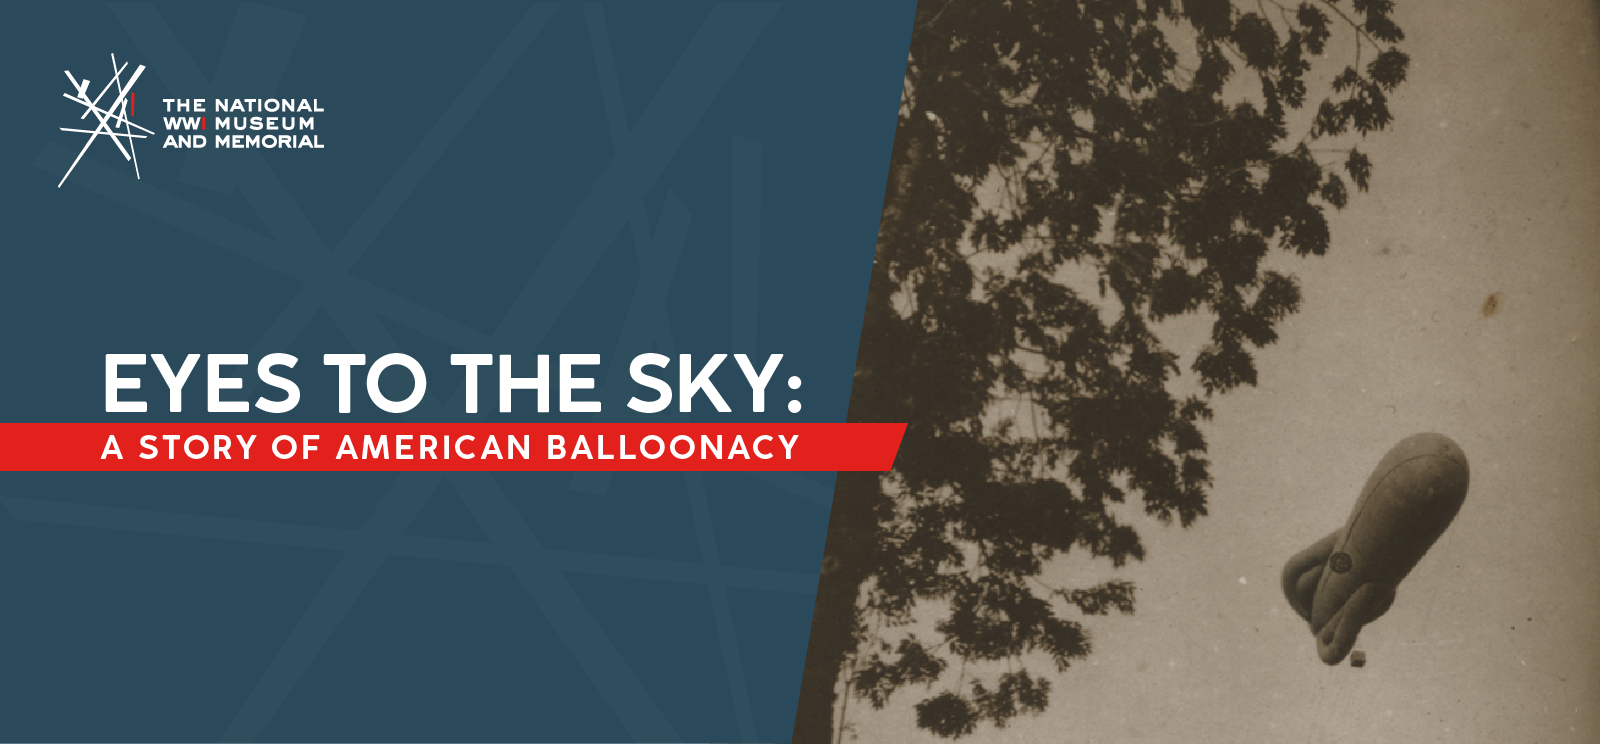 ပုံ- မြေပြင်ပေါ်ရှိ ကြည့်ရှုသူ၏အထက်တွင် အမြင့်ပျံနေသည့် 'ဝက်အူချောင်းအမျိုးအစား' ပူဖောင်းကြီး၏ အဖြူအမည်းဓာတ်ပုံ။ စာသား- 'Eyes to the Sky: / အမေရိကန် Balloonacy ပုံပြင်'